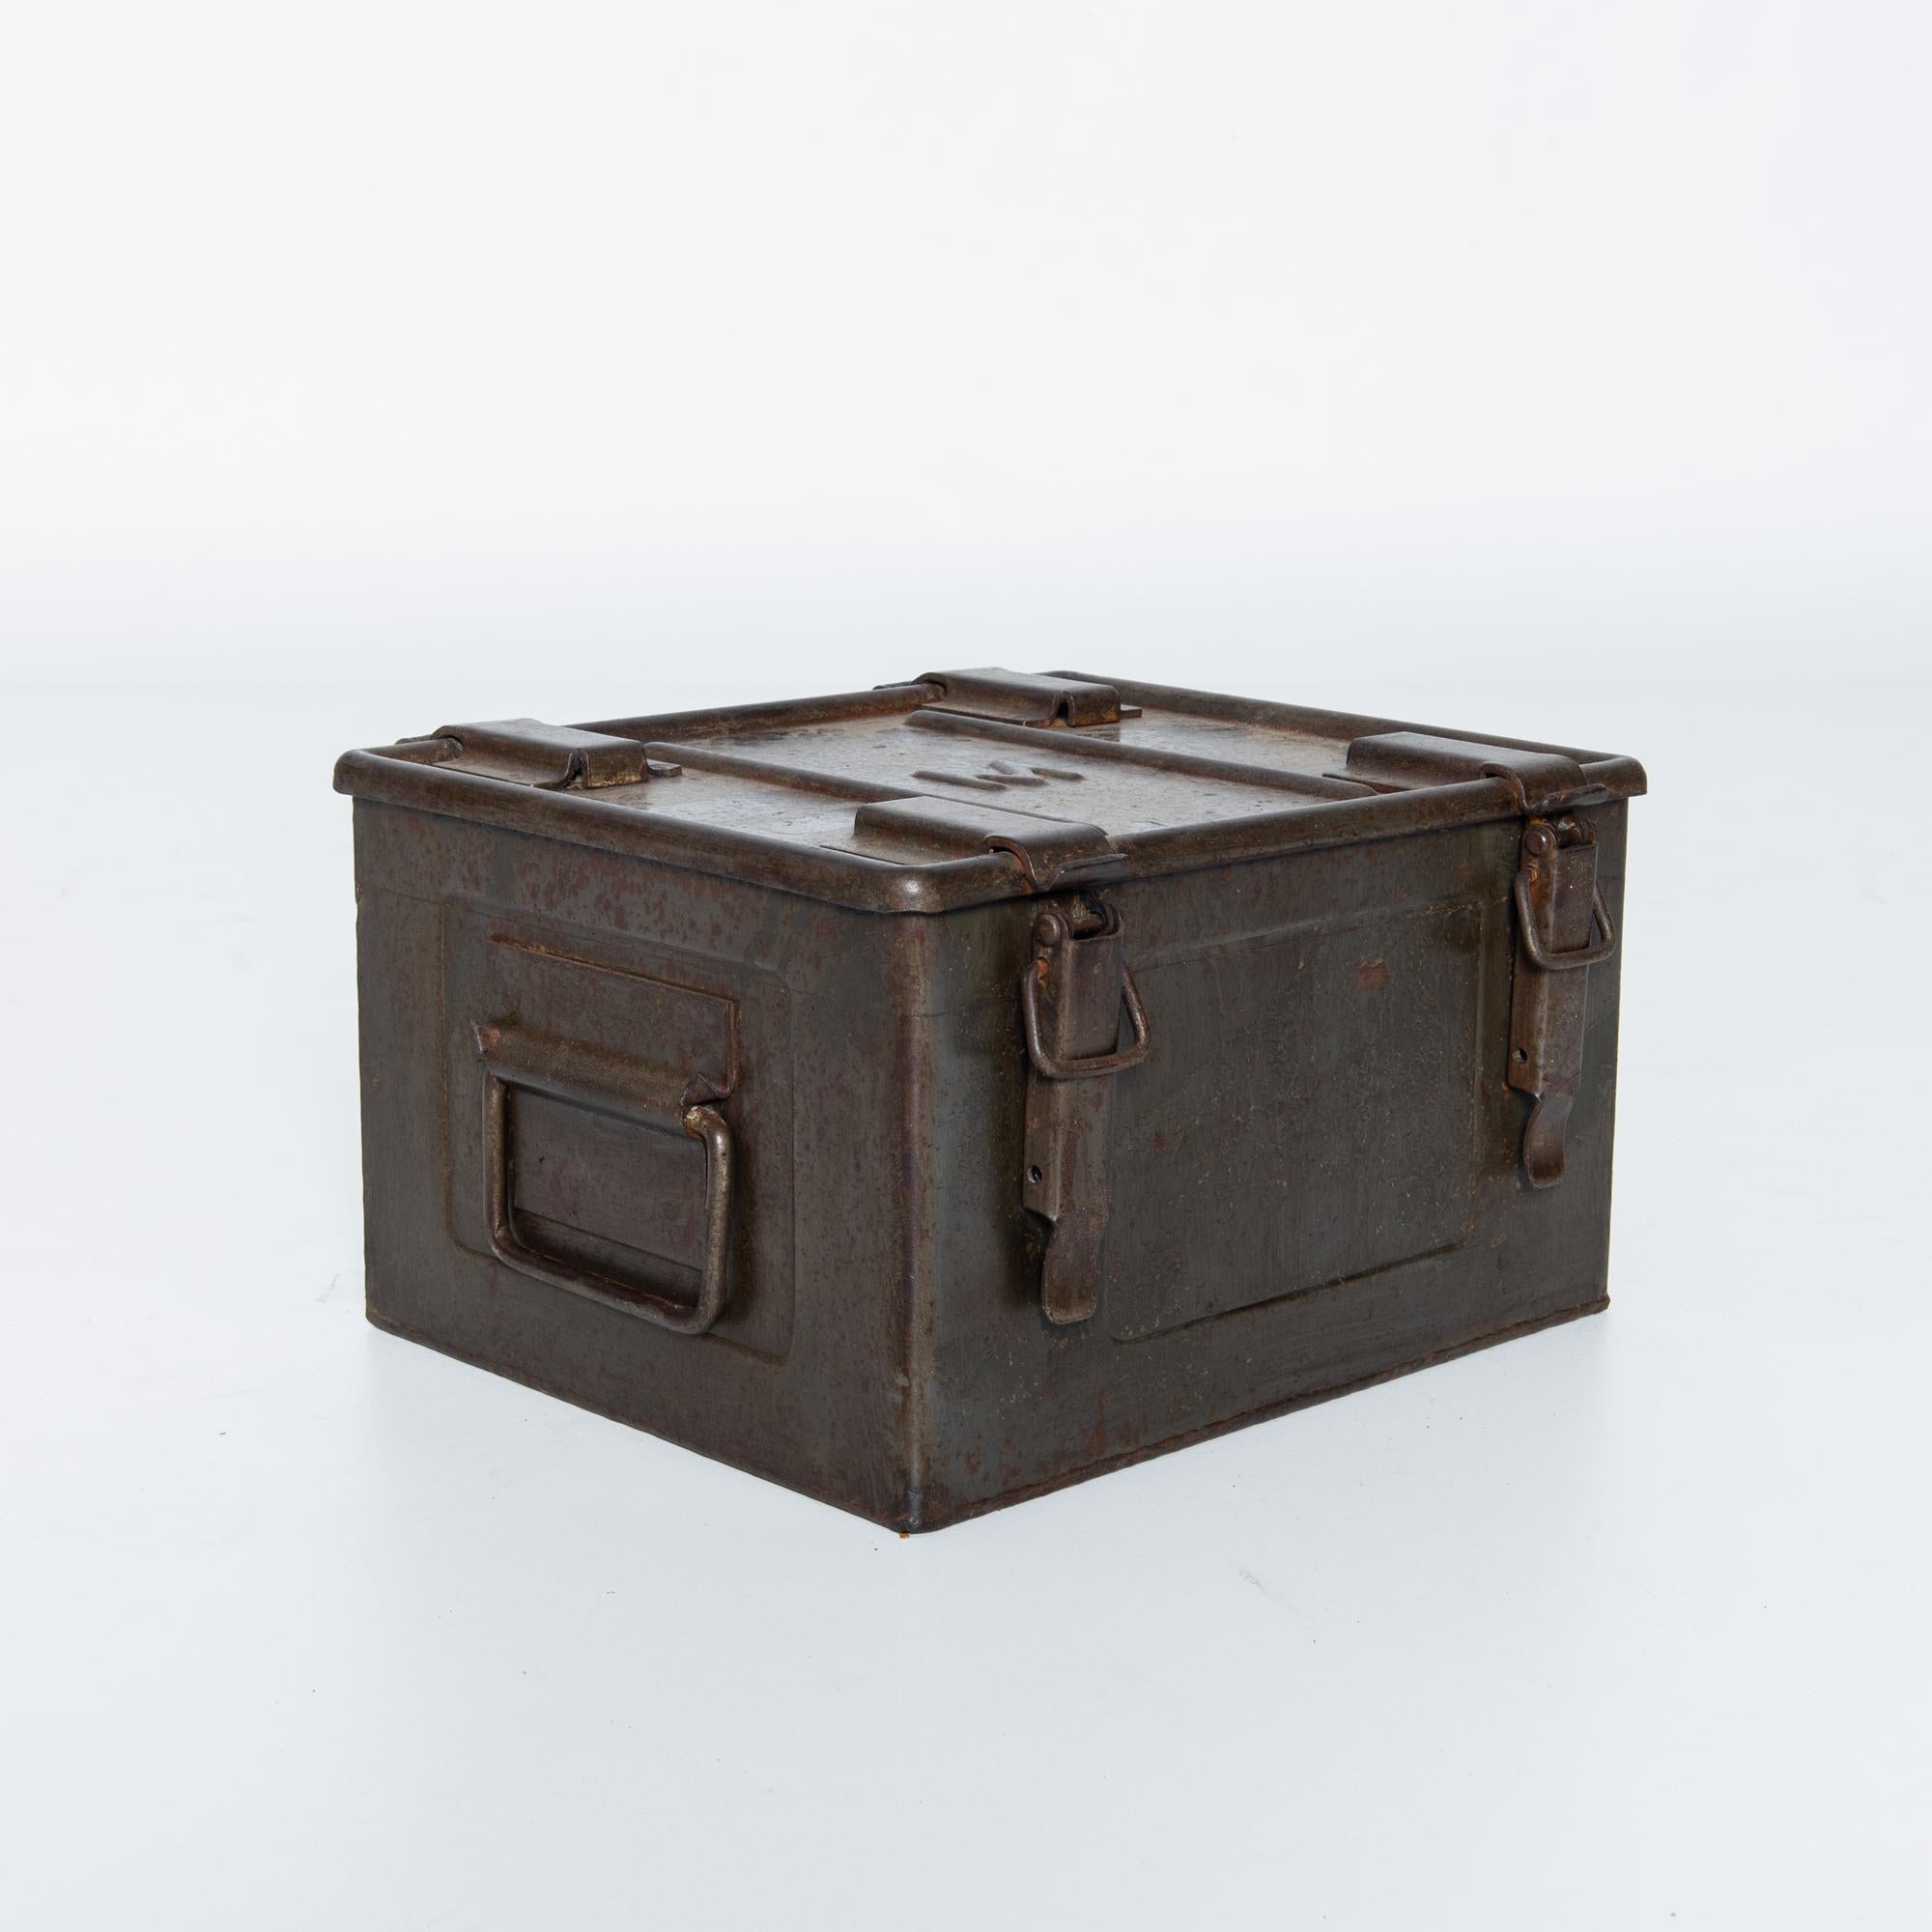 Cette boîte en métal belge des années 1920 est une véritable relique du passé, offrant un aperçu de l'histoire des objets du quotidien. Sa construction robuste évoque une époque où la durabilité était primordiale, et sa surface usée par les